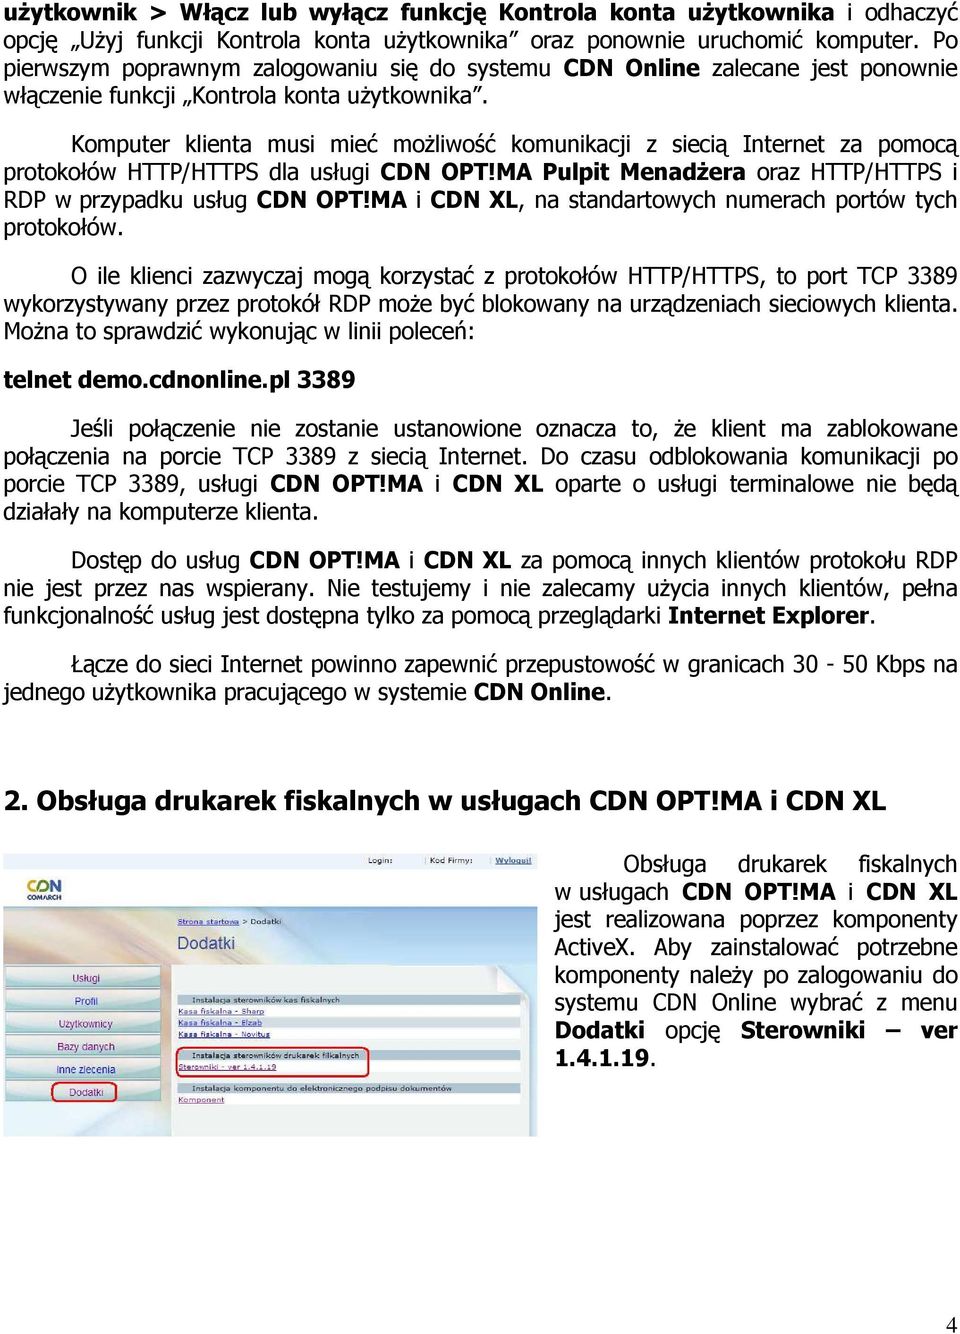 Komputer klienta musi mieć moŝliwość komunikacji z siecią Internet za pomocą protokołów HTTP/HTTPS dla usługi CDN OPT!MA Pulpit MenadŜera oraz HTTP/HTTPS i RDP w przypadku usług CDN OPT!